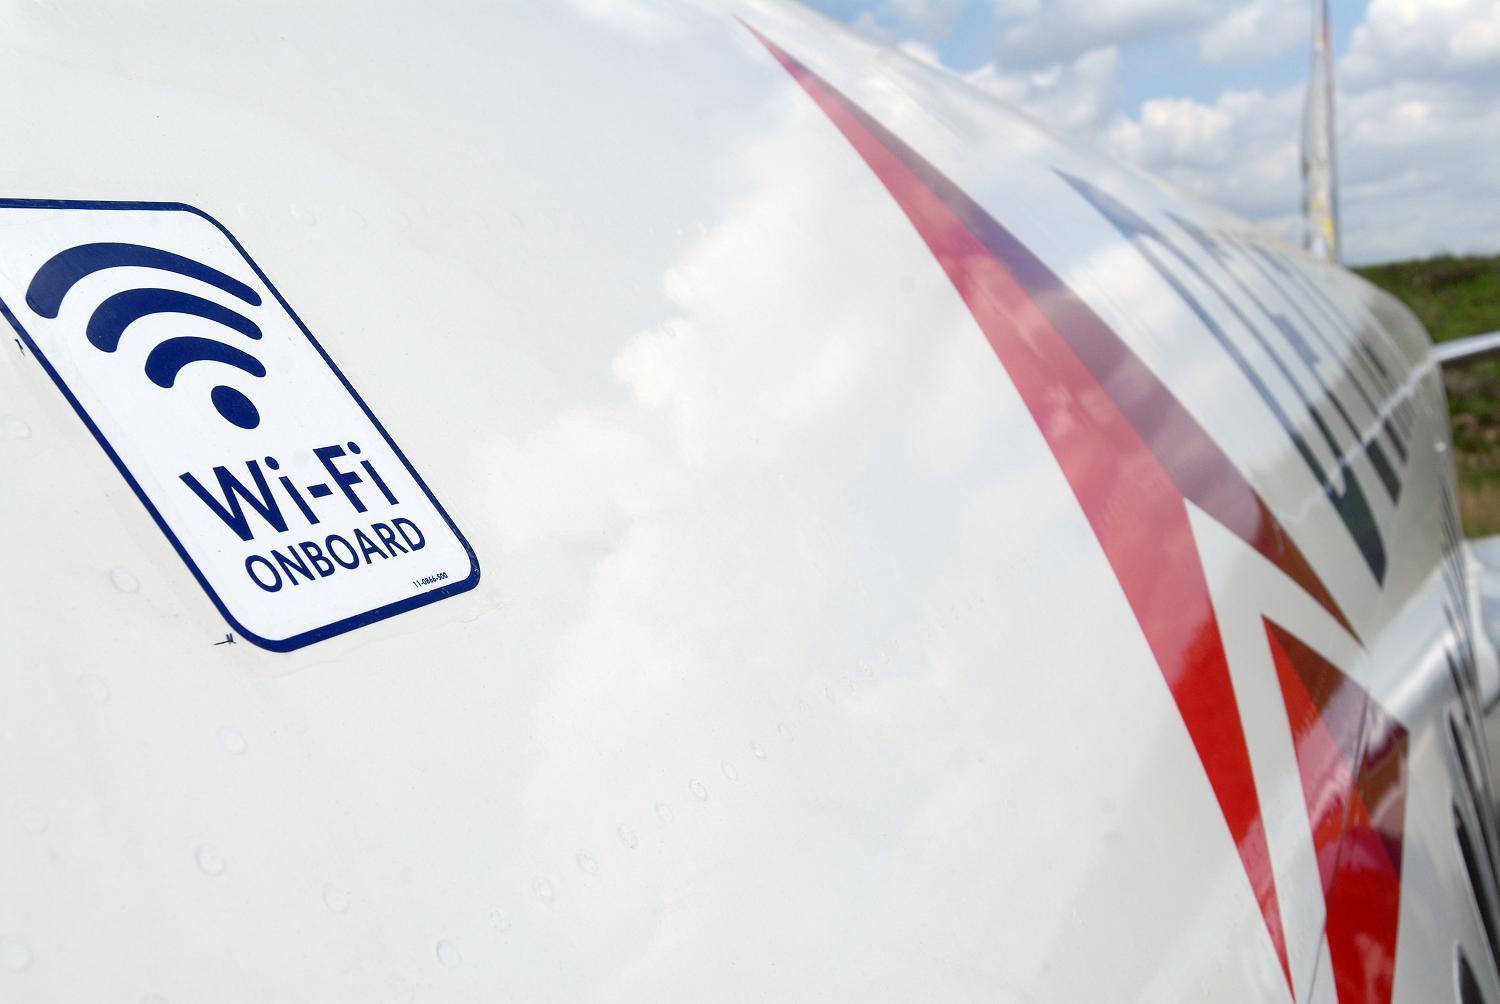 Seamless Air Alliance permitirá que aerolíneas ofrezcan conectividad integrada en la cabina